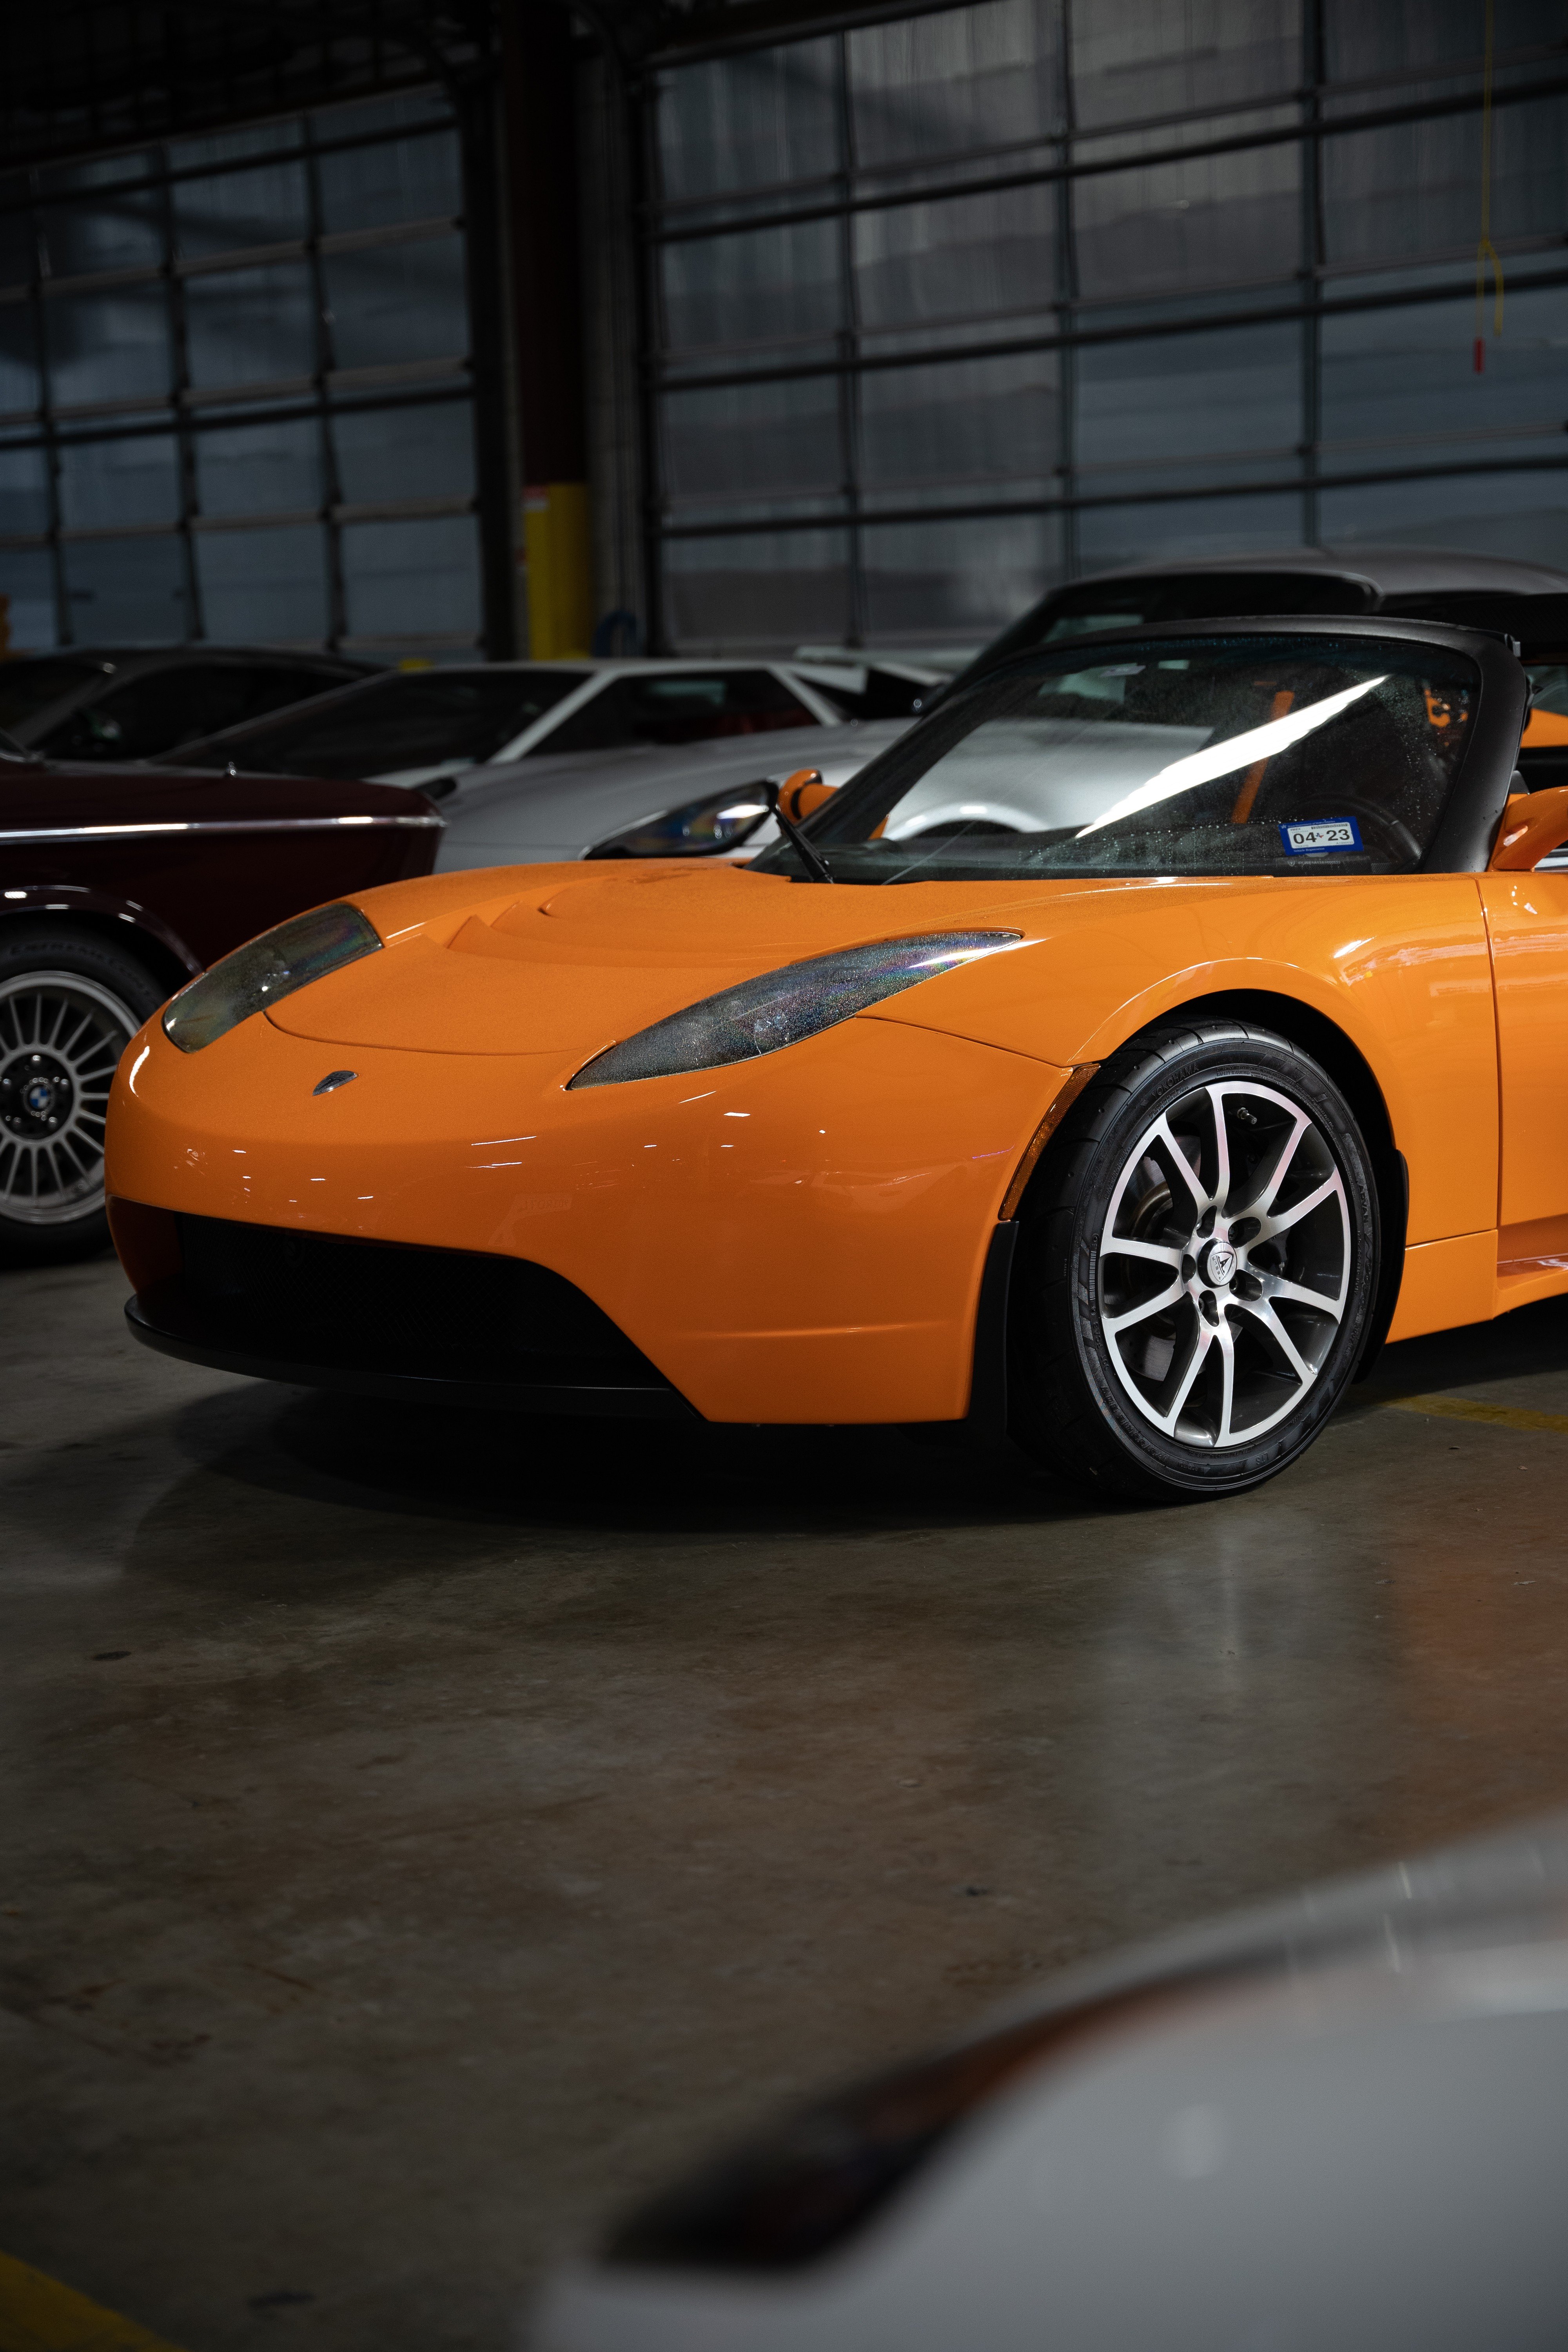 2010 Very Orange Metallic Tesla Roadster at Petrol Lounge in Austin, TX.